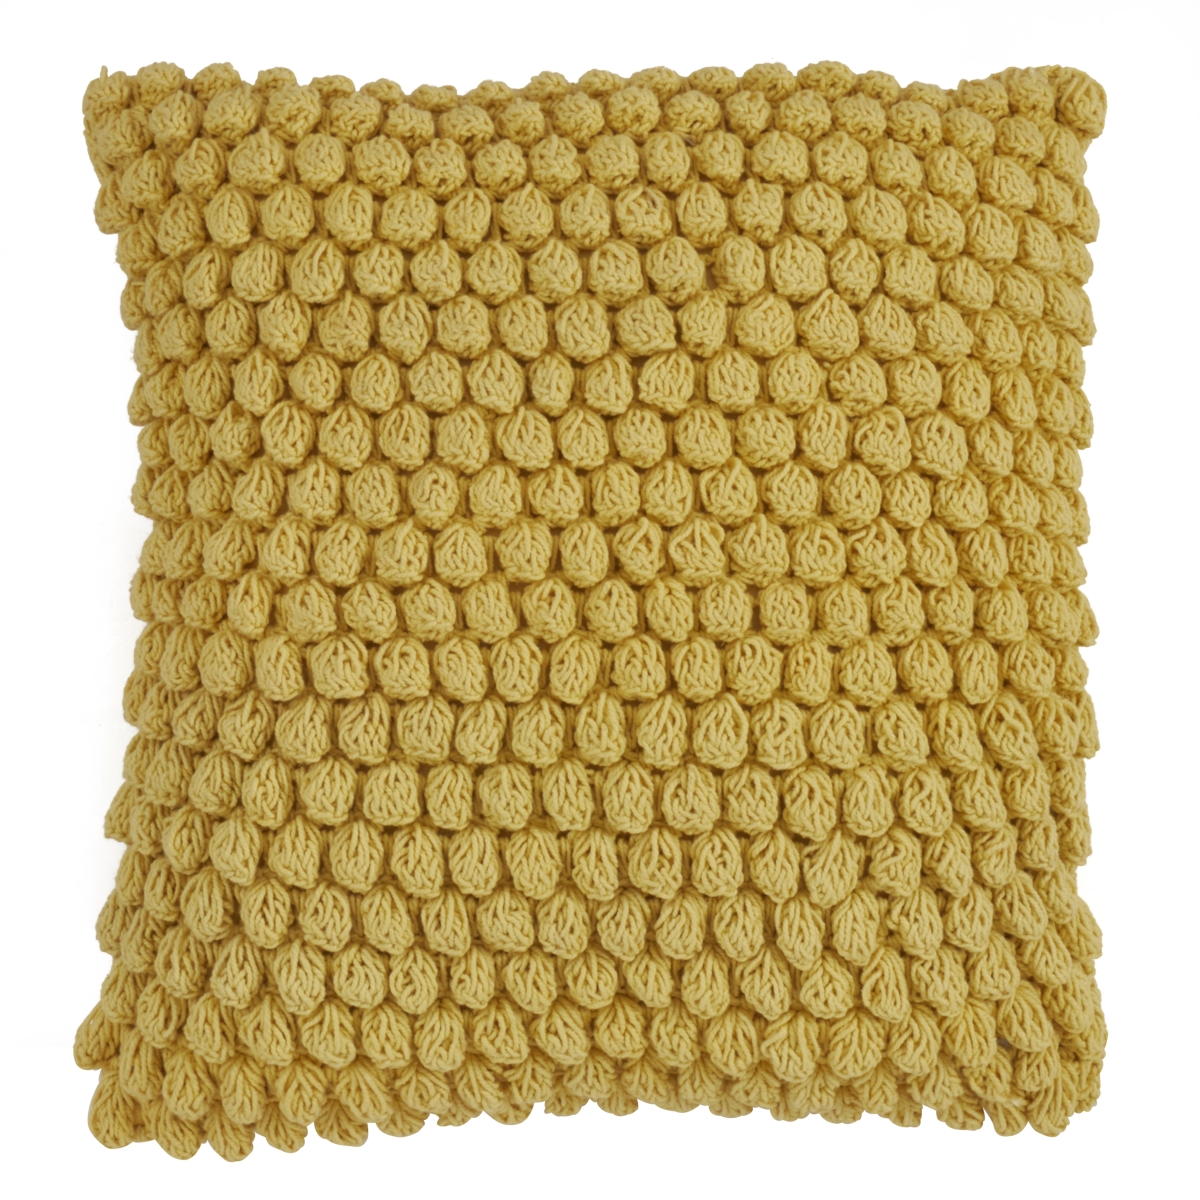 SARO LIFESTYLE SARO 3519.Y20S Cotton Down Filling Throw Pillow with Crochet Pom Pom Design  Yellow